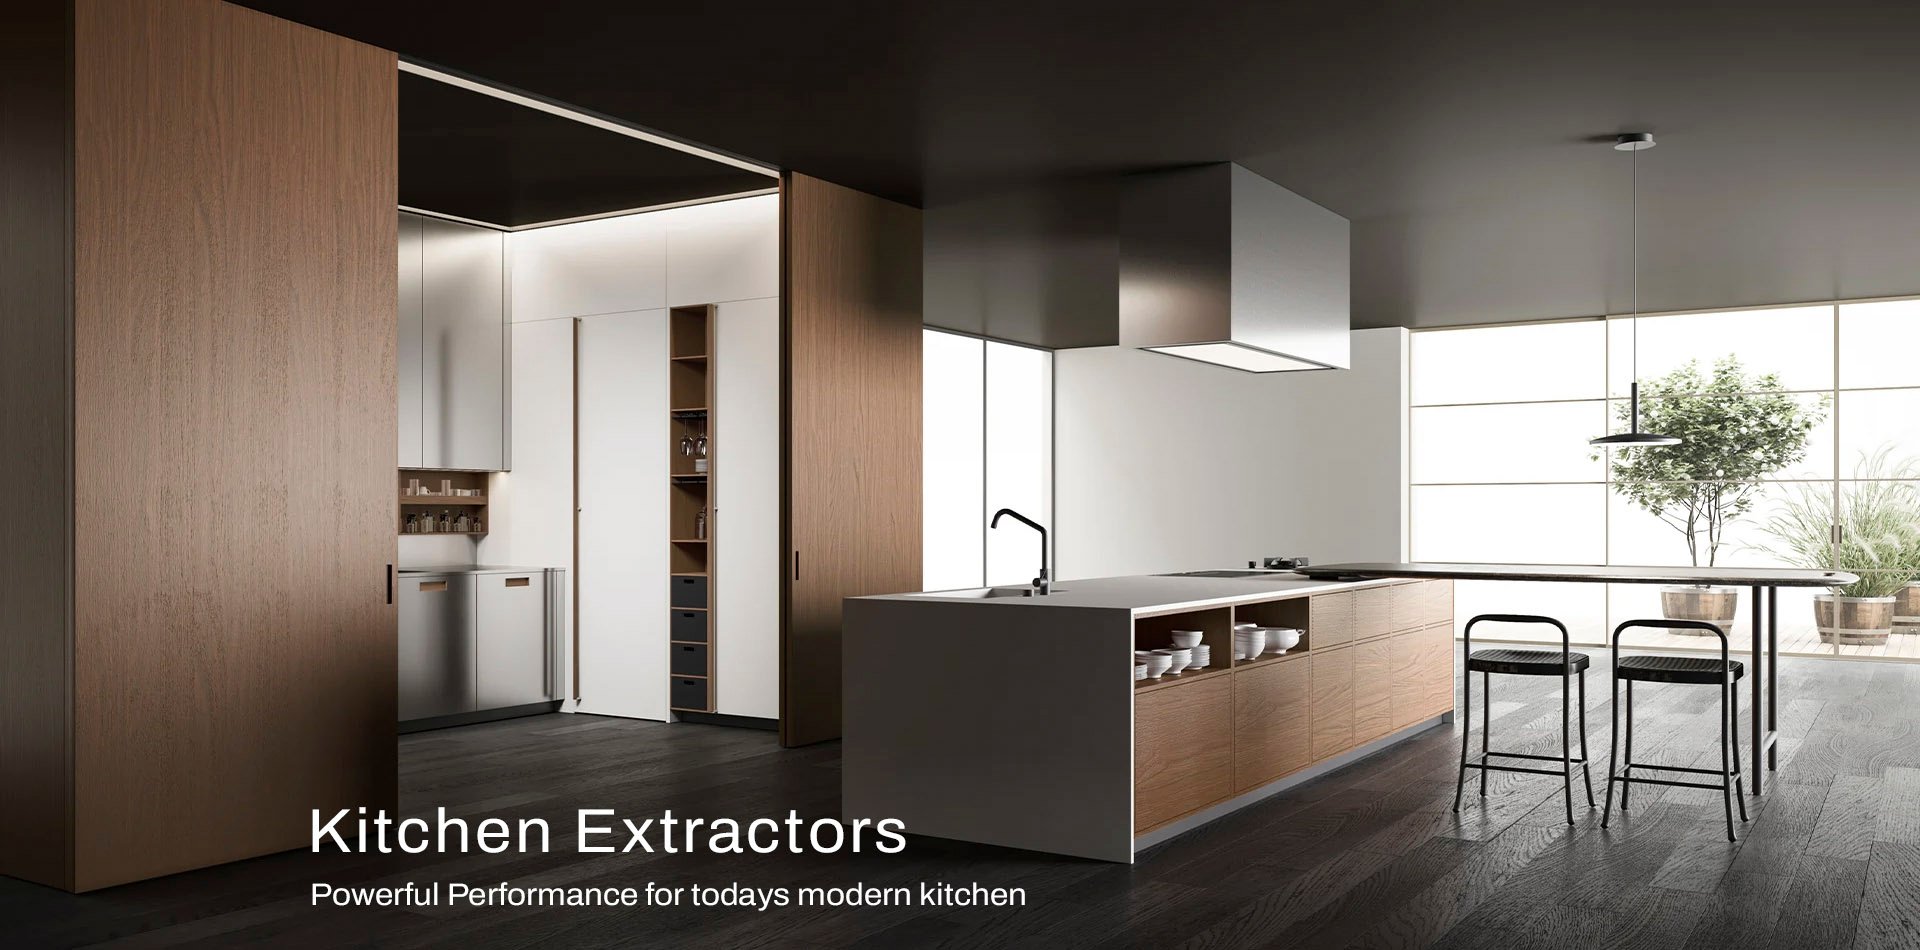 Ceiling Kitchen Extractors